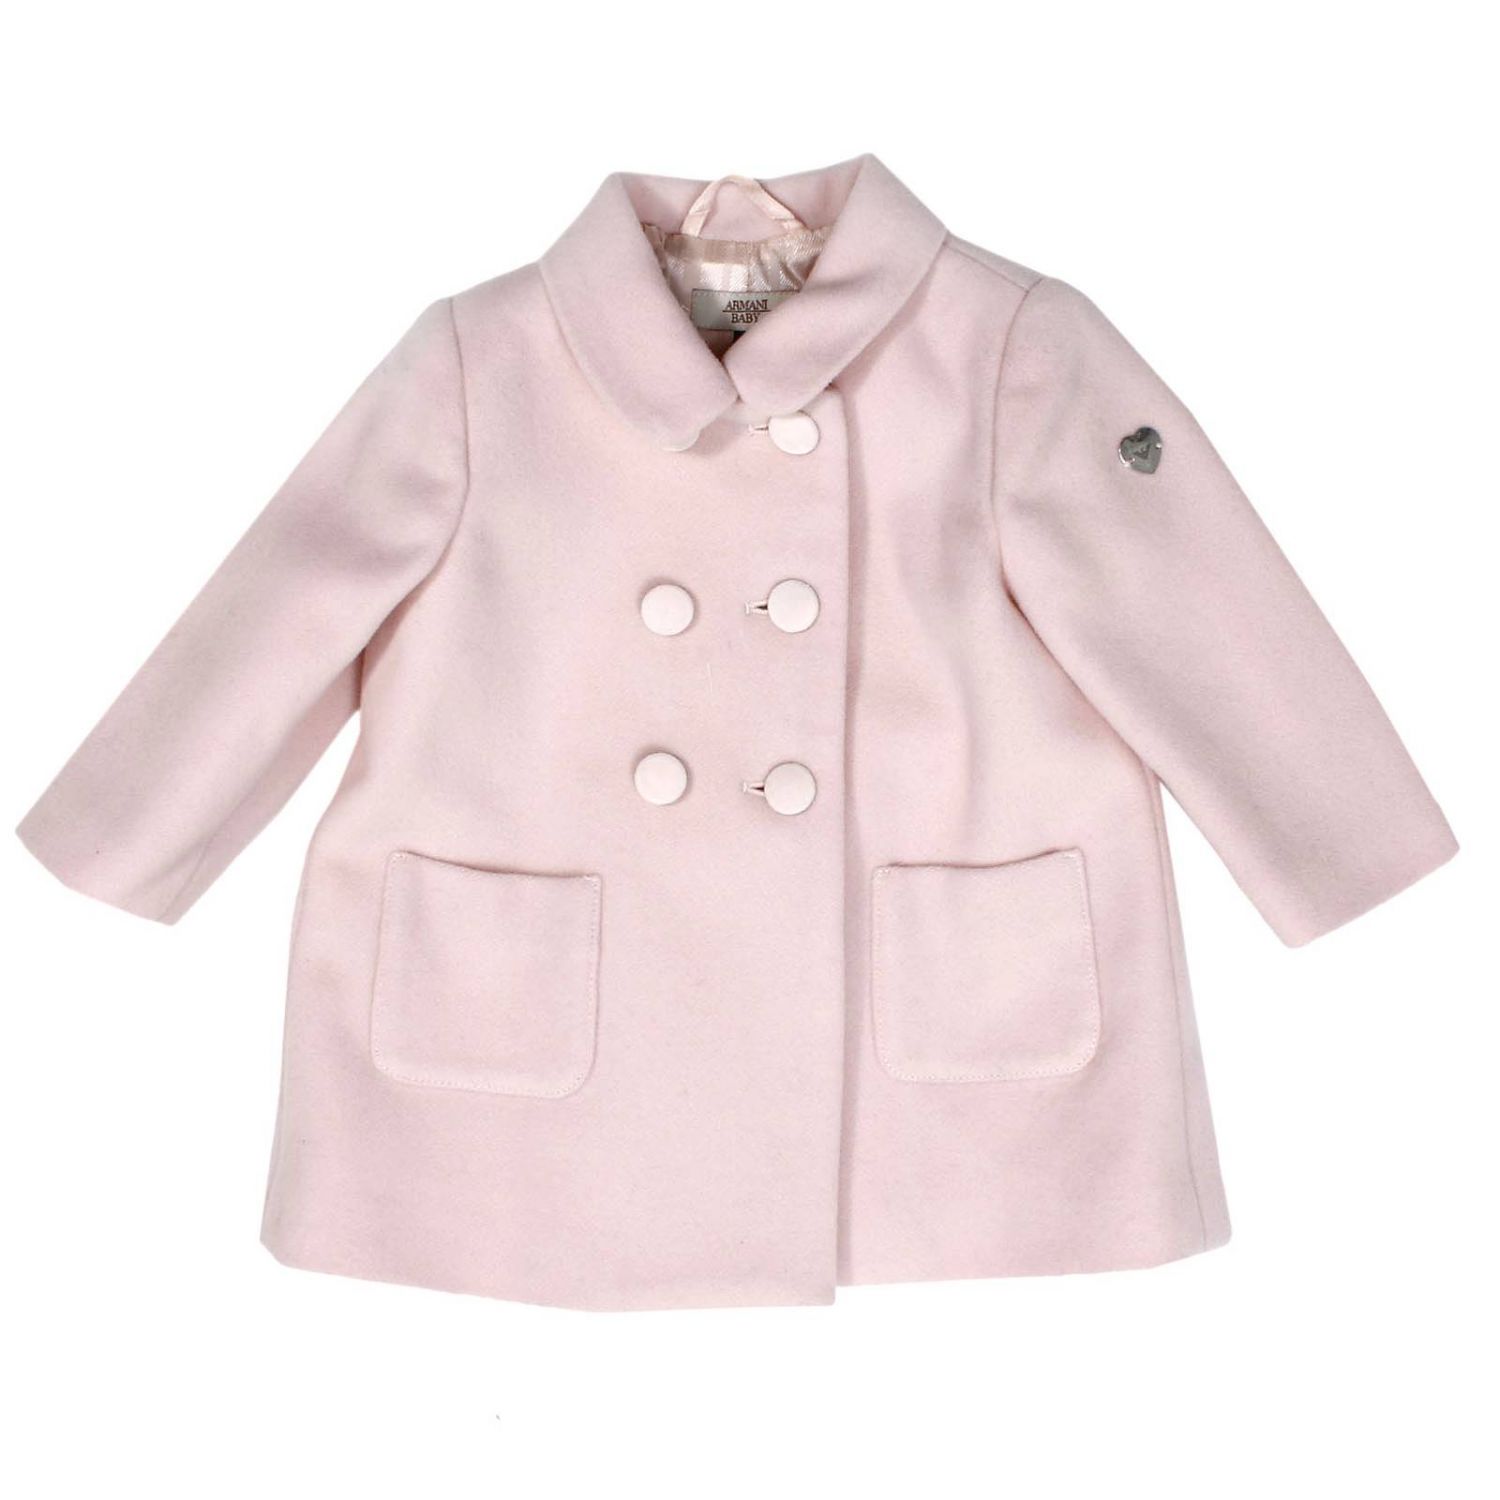 armani baby coat